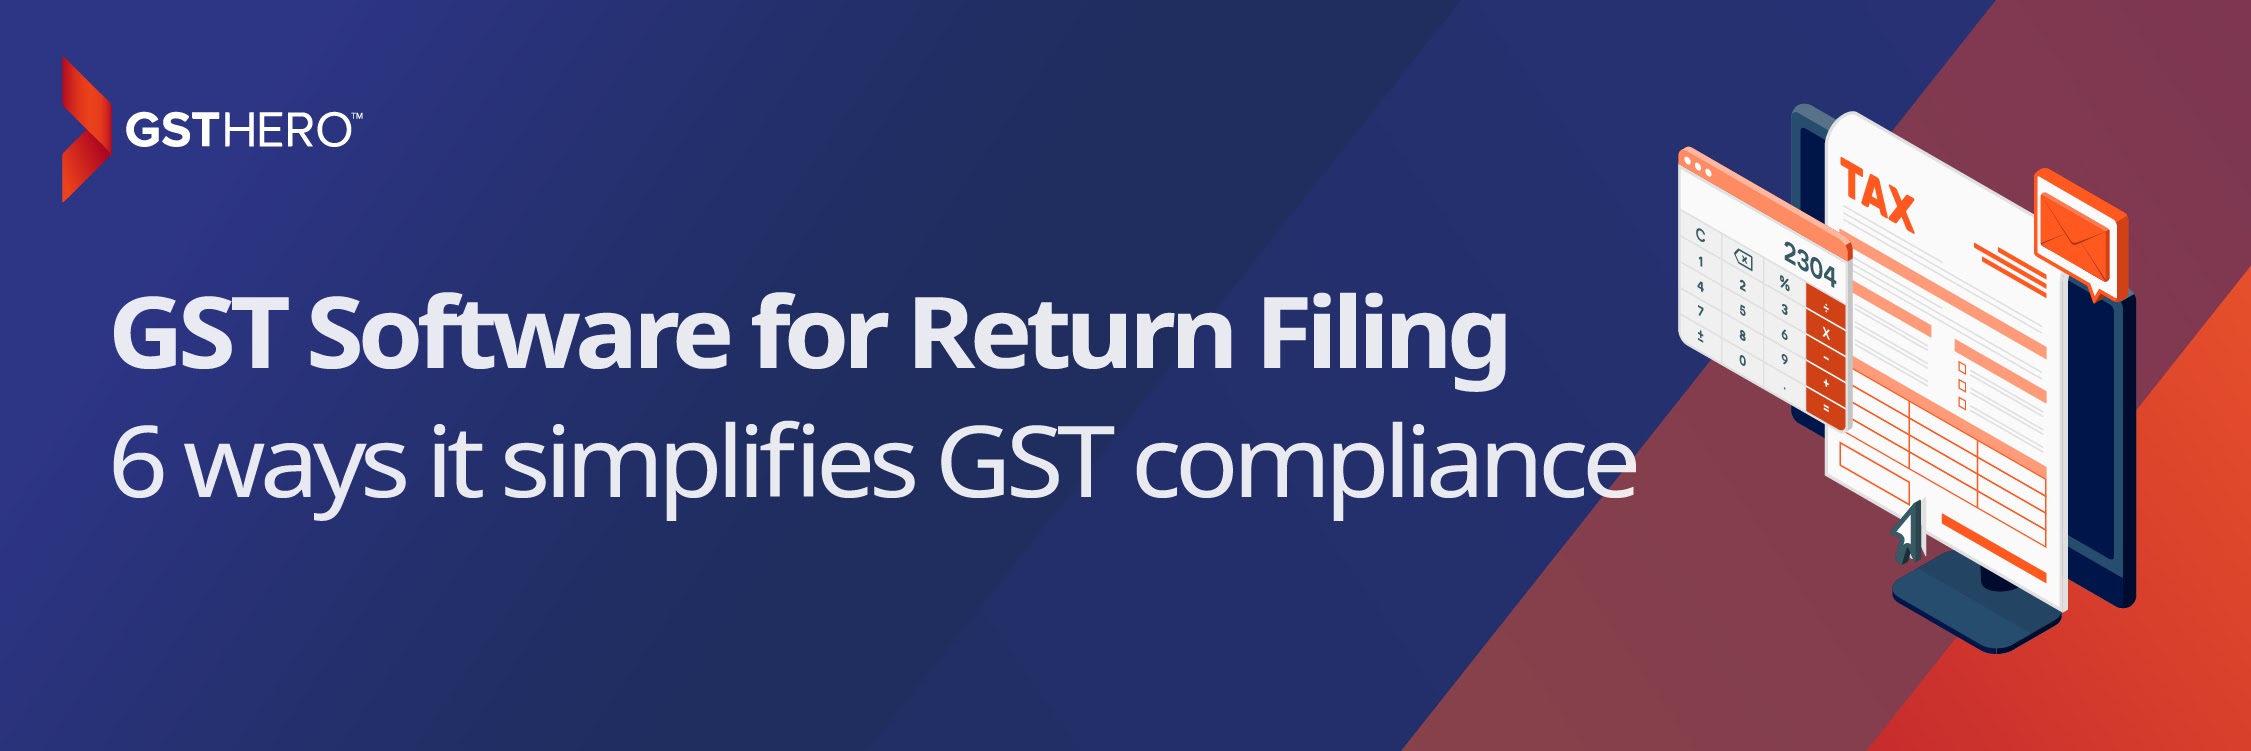 GST software for return filing